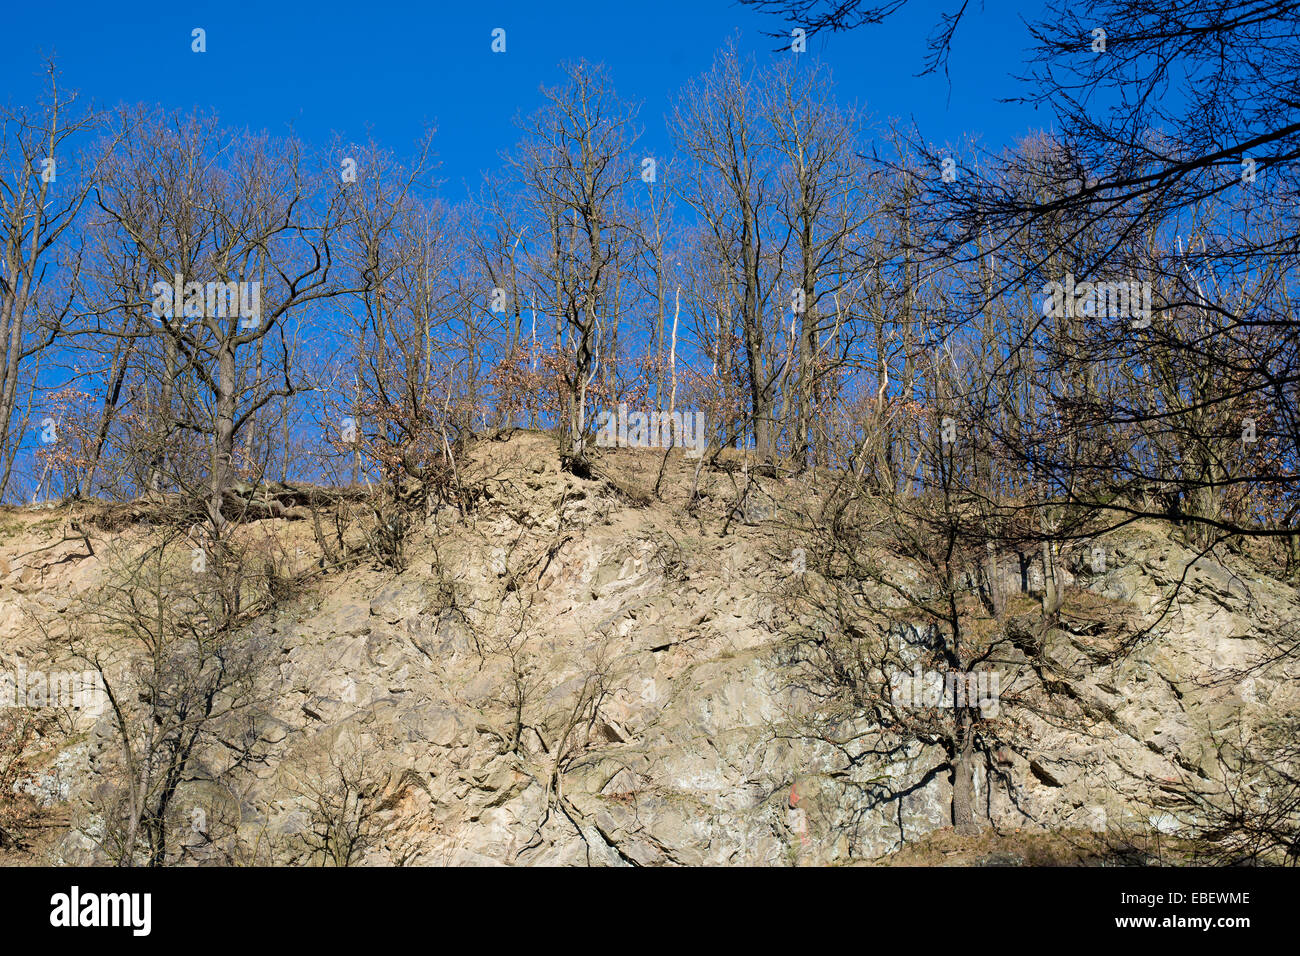 Deshojado árboles en una pared de roca en invierno, con el cielo azul Foto de stock